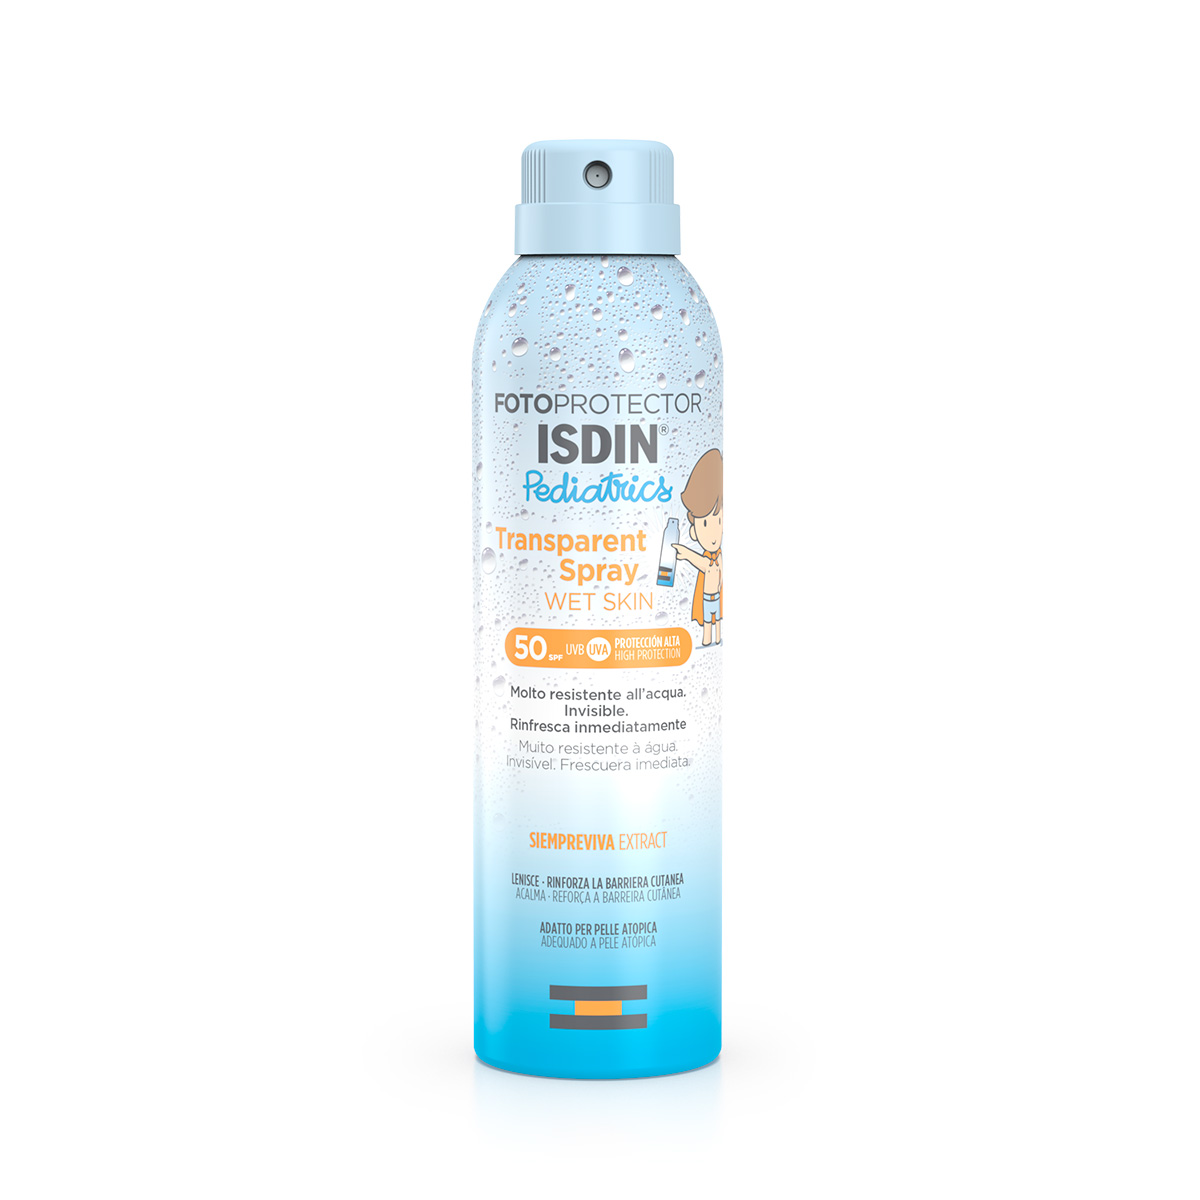 Fotoprotector Isdin Pediatrics Transparent Spray Wet Skin Pediatrics Spf 50 Solare 250 ml